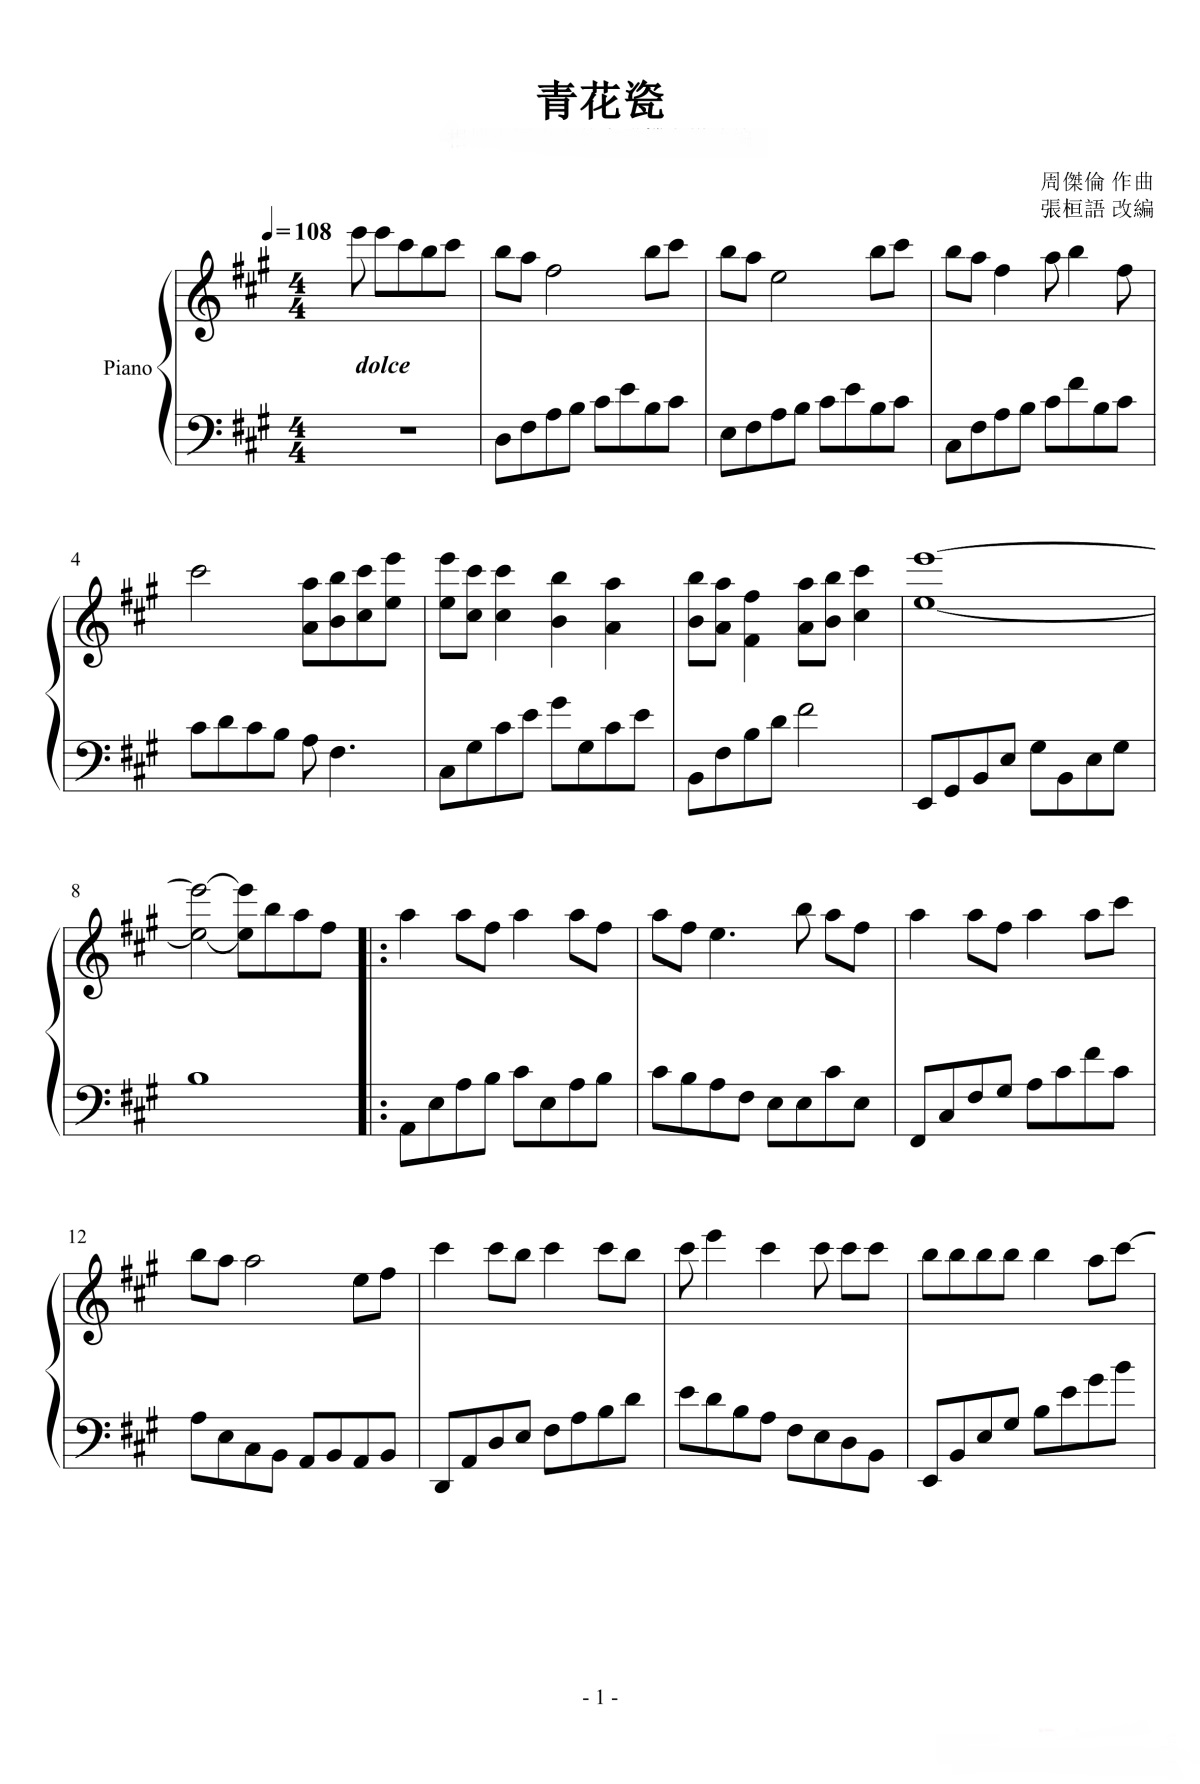 《青花瓷》的钢琴谱钢琴曲谱 - 周杰伦